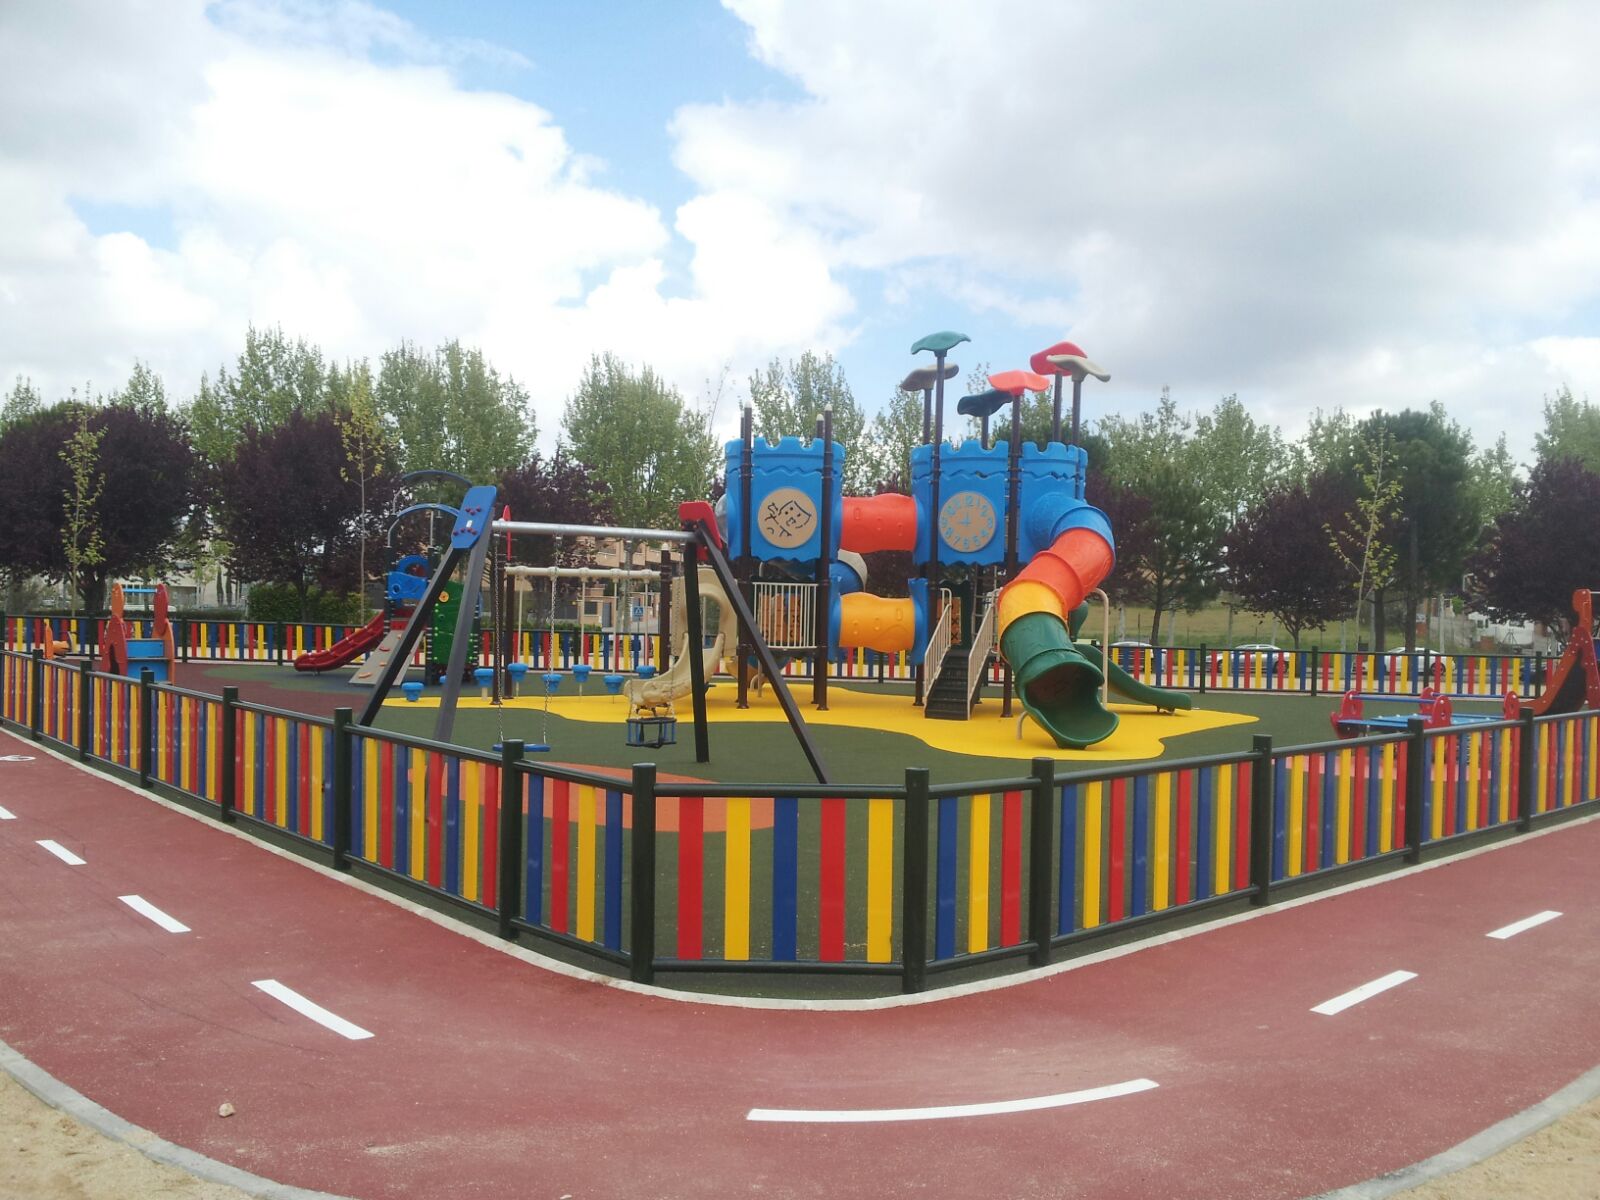 Vallas Parques Infantiles - Parques infantiles - Mobiliario urbano